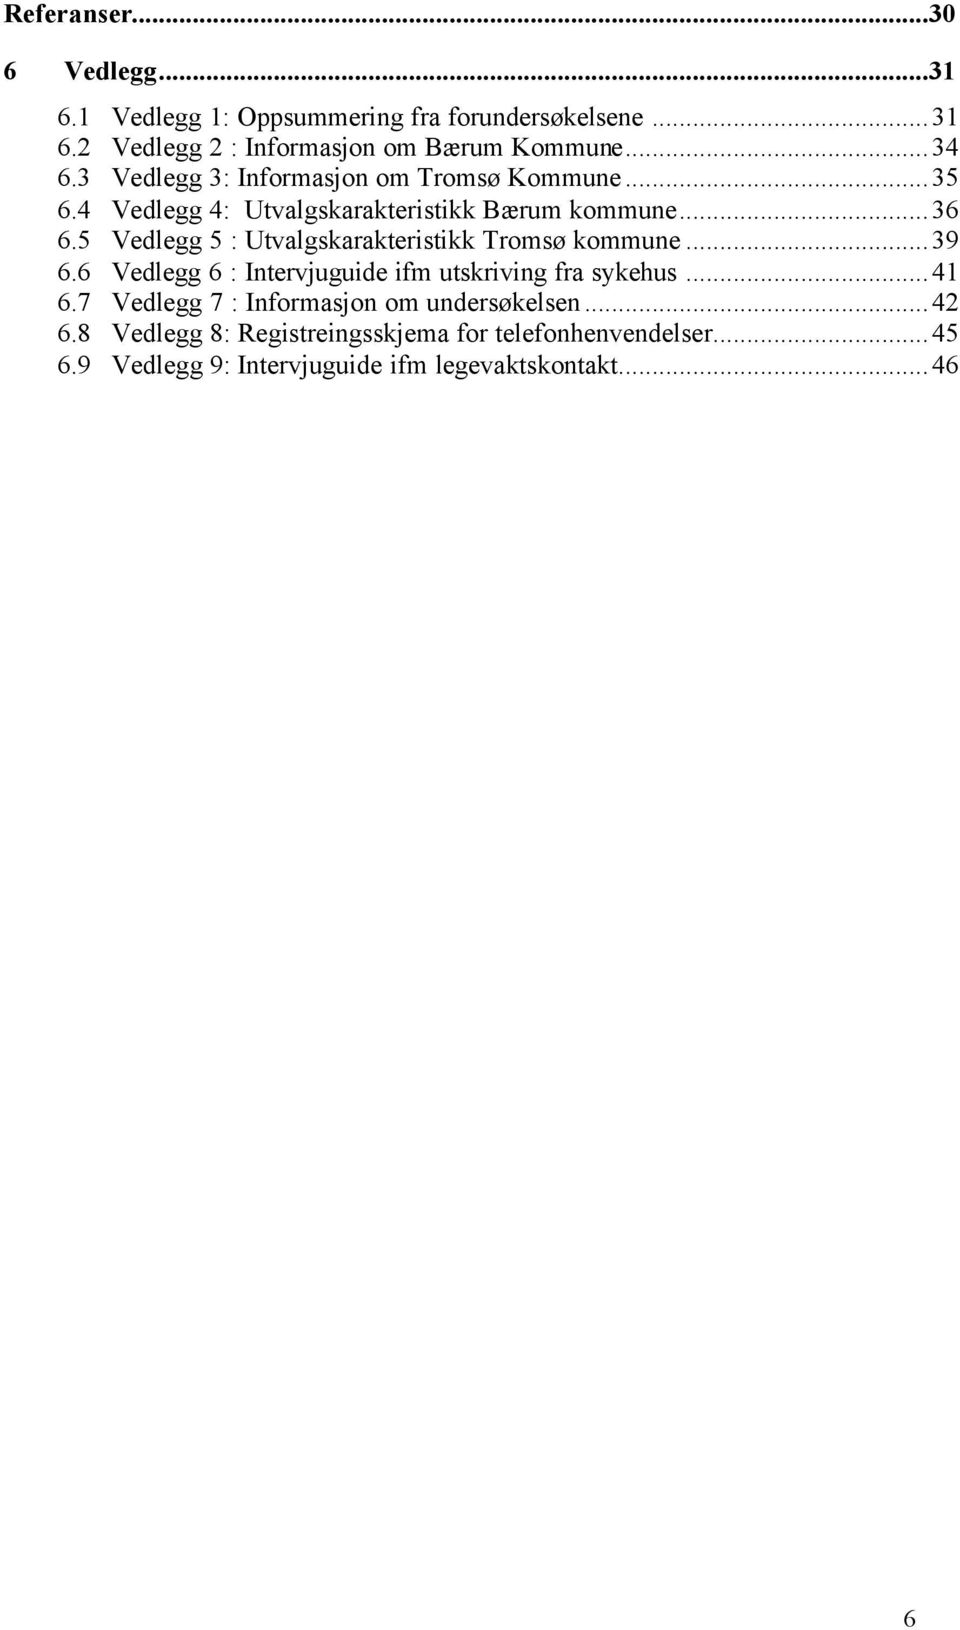 5 Vedlegg 5 : Utvalgskarakteristikk Tromsø kommune...39 6.6 Vedlegg 6 : Intervjuguide ifm utskriving fra sykehus...41 6.